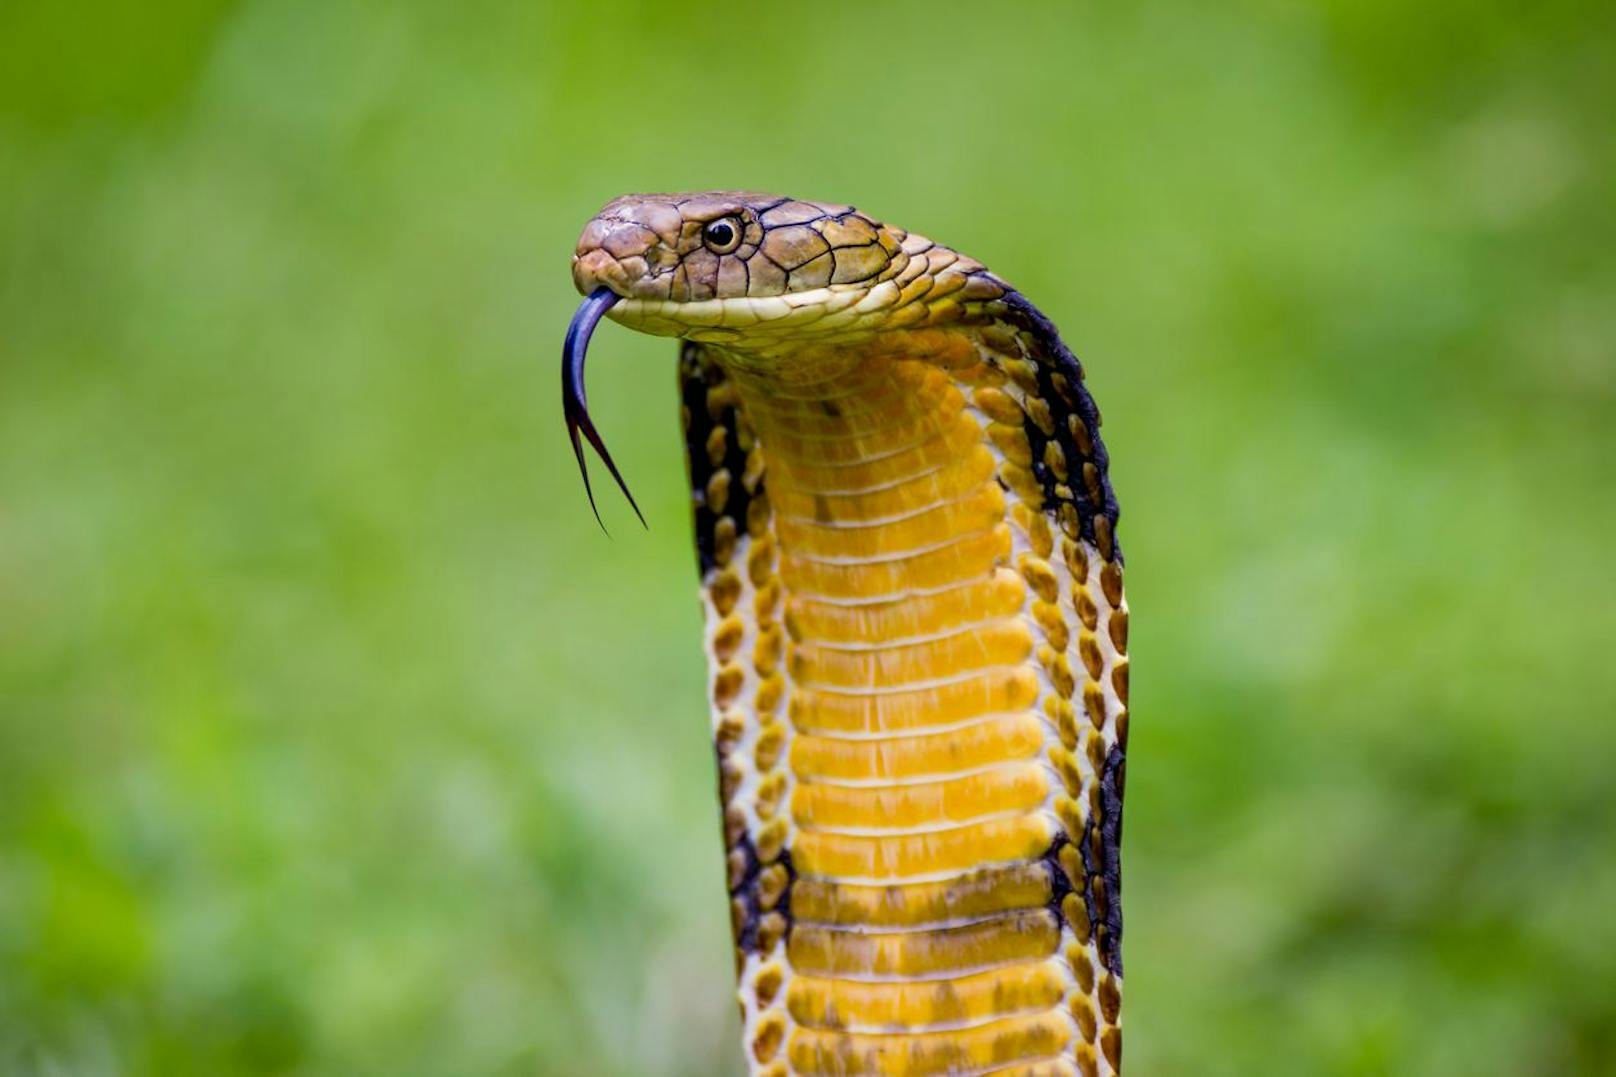 Die <strong>Königskobra</strong> ist mit 5,4 Metern die längste Kobra und gehört auch zu den giftigsten. Doch nicht das Gift wäre so tödlich, sondern die hohe Dosierung bei jedem Biss.